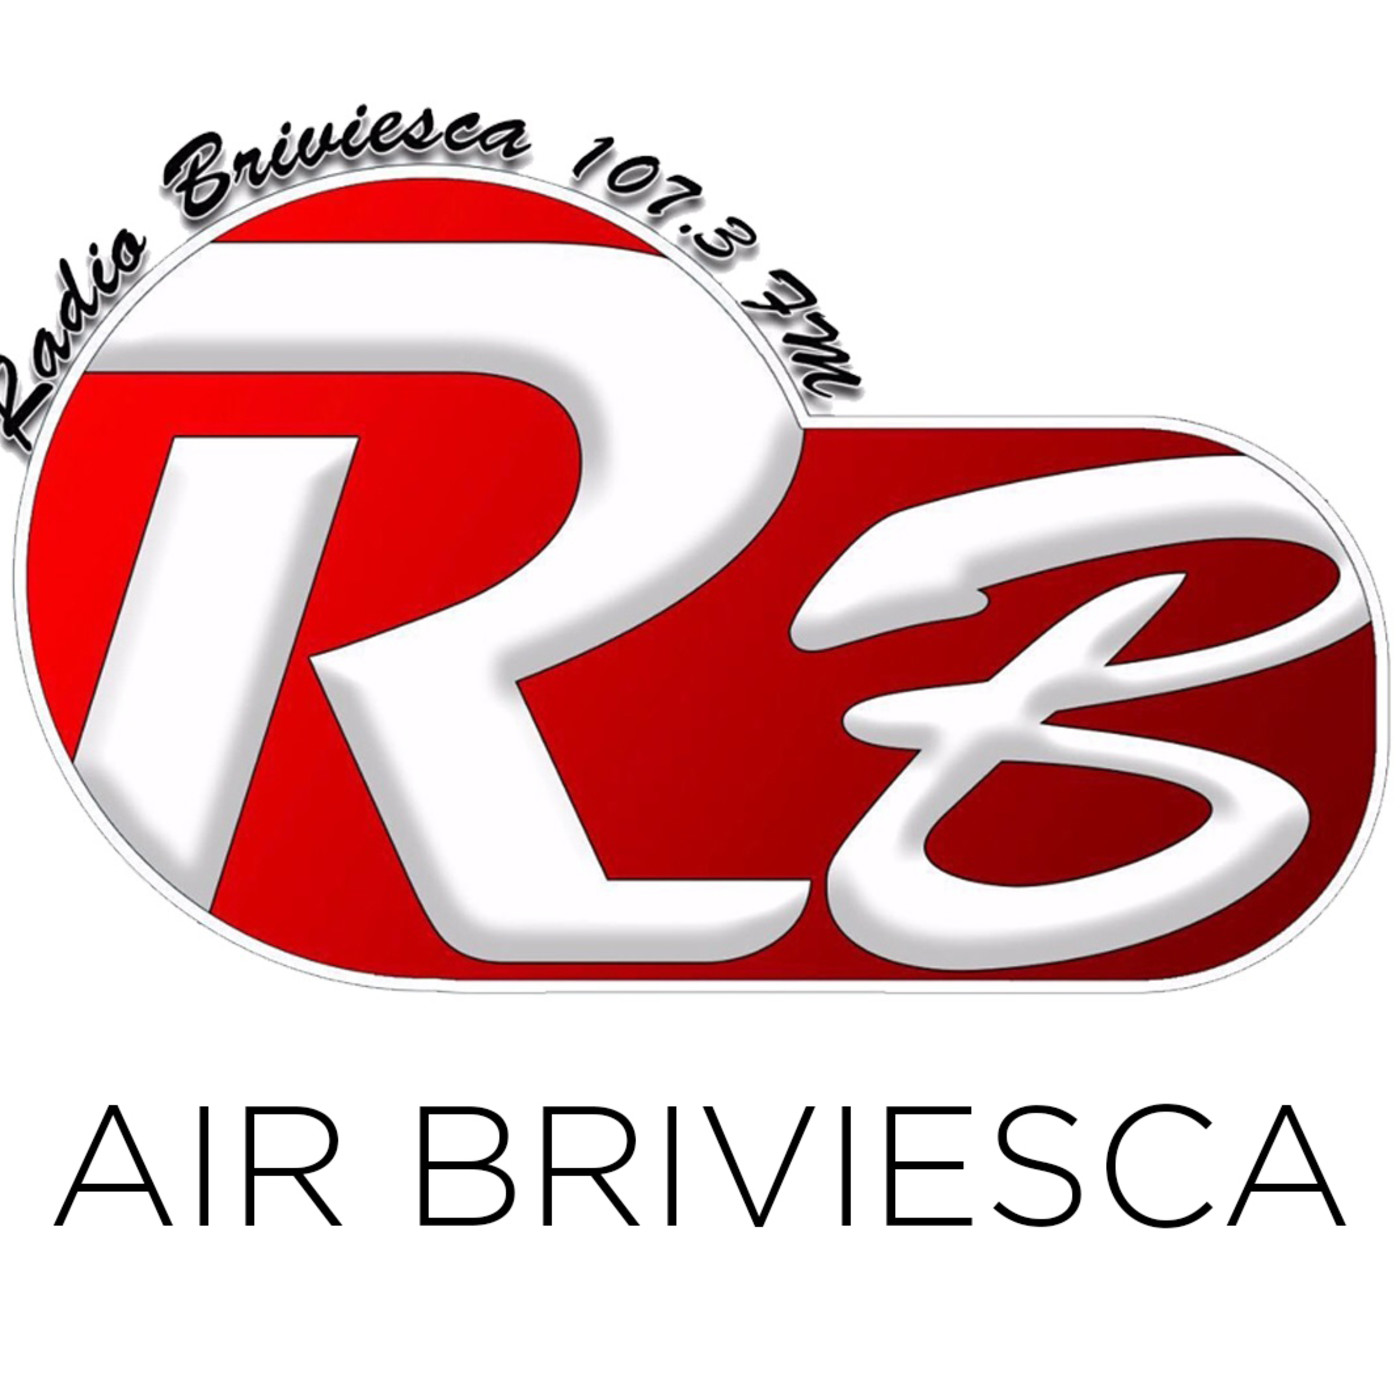 Air Briviesca 11/02/2018